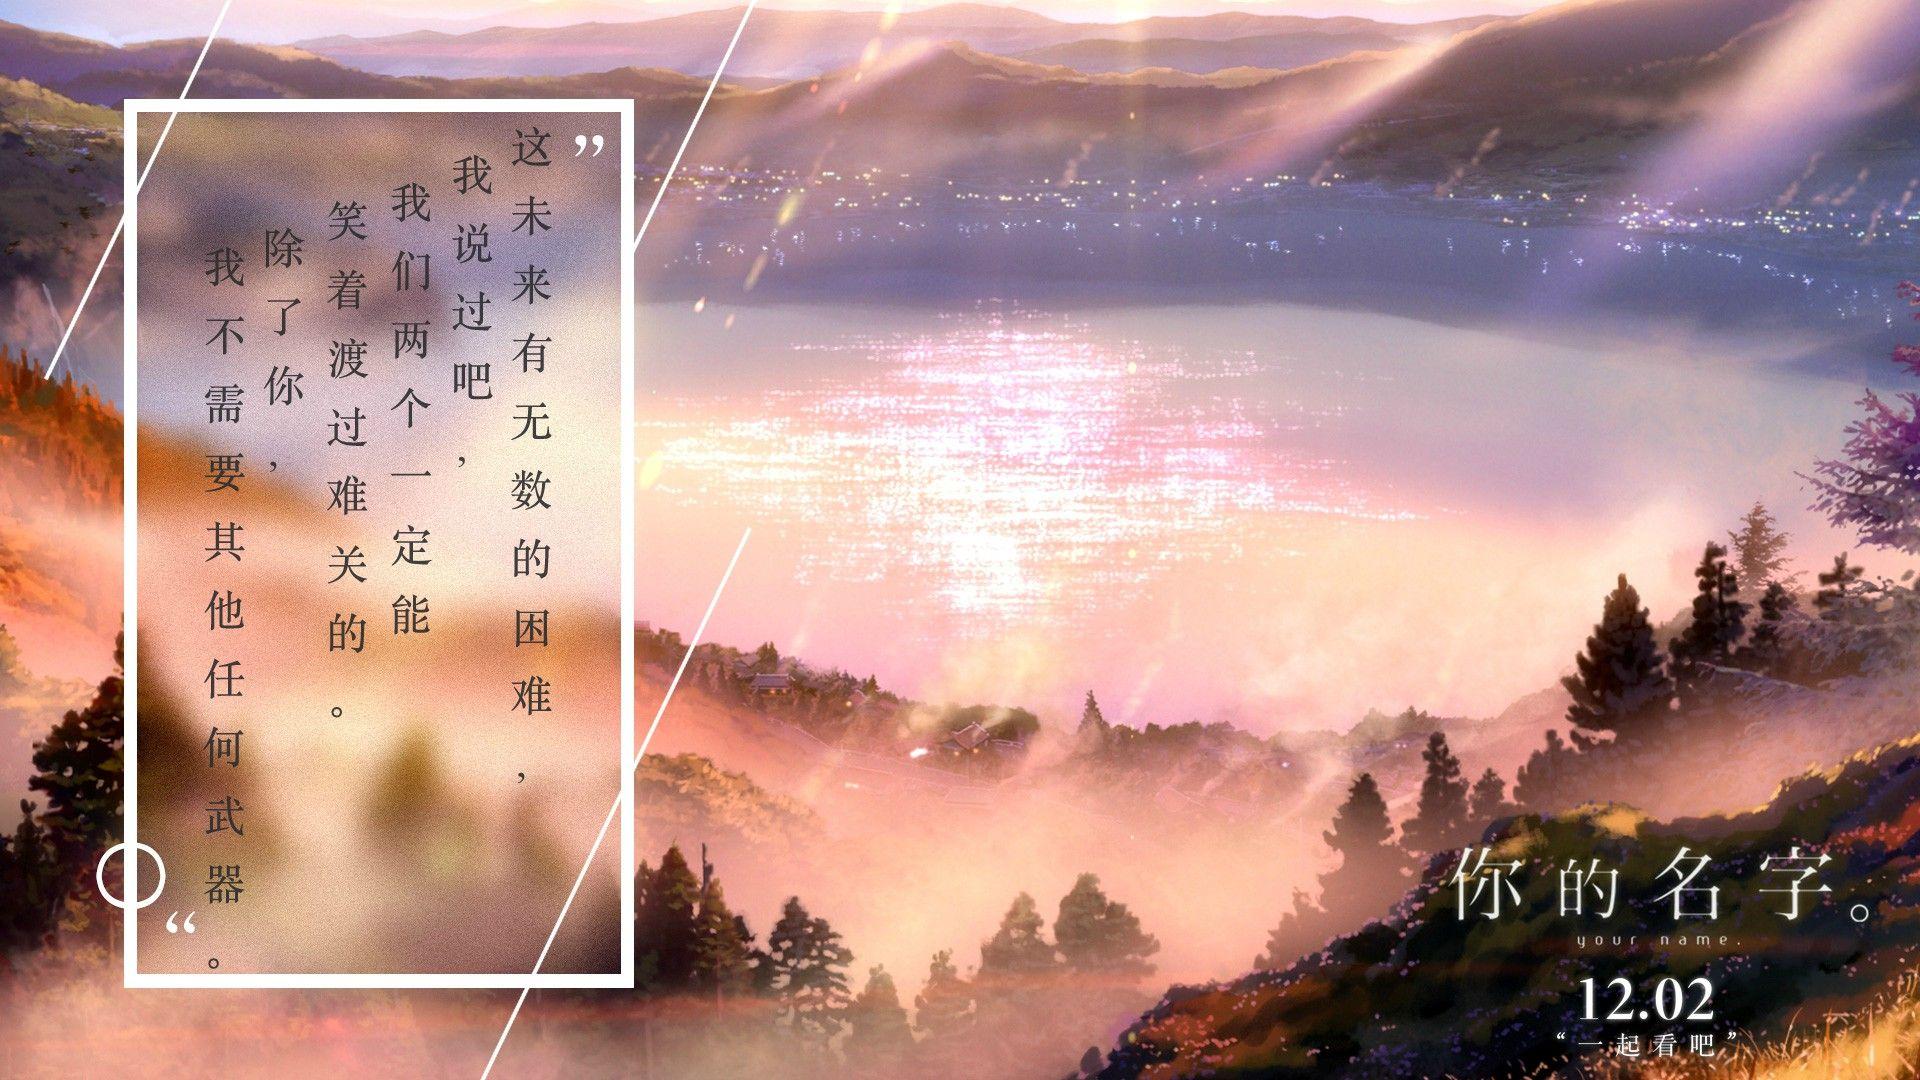 4k anime landscape wallpaper